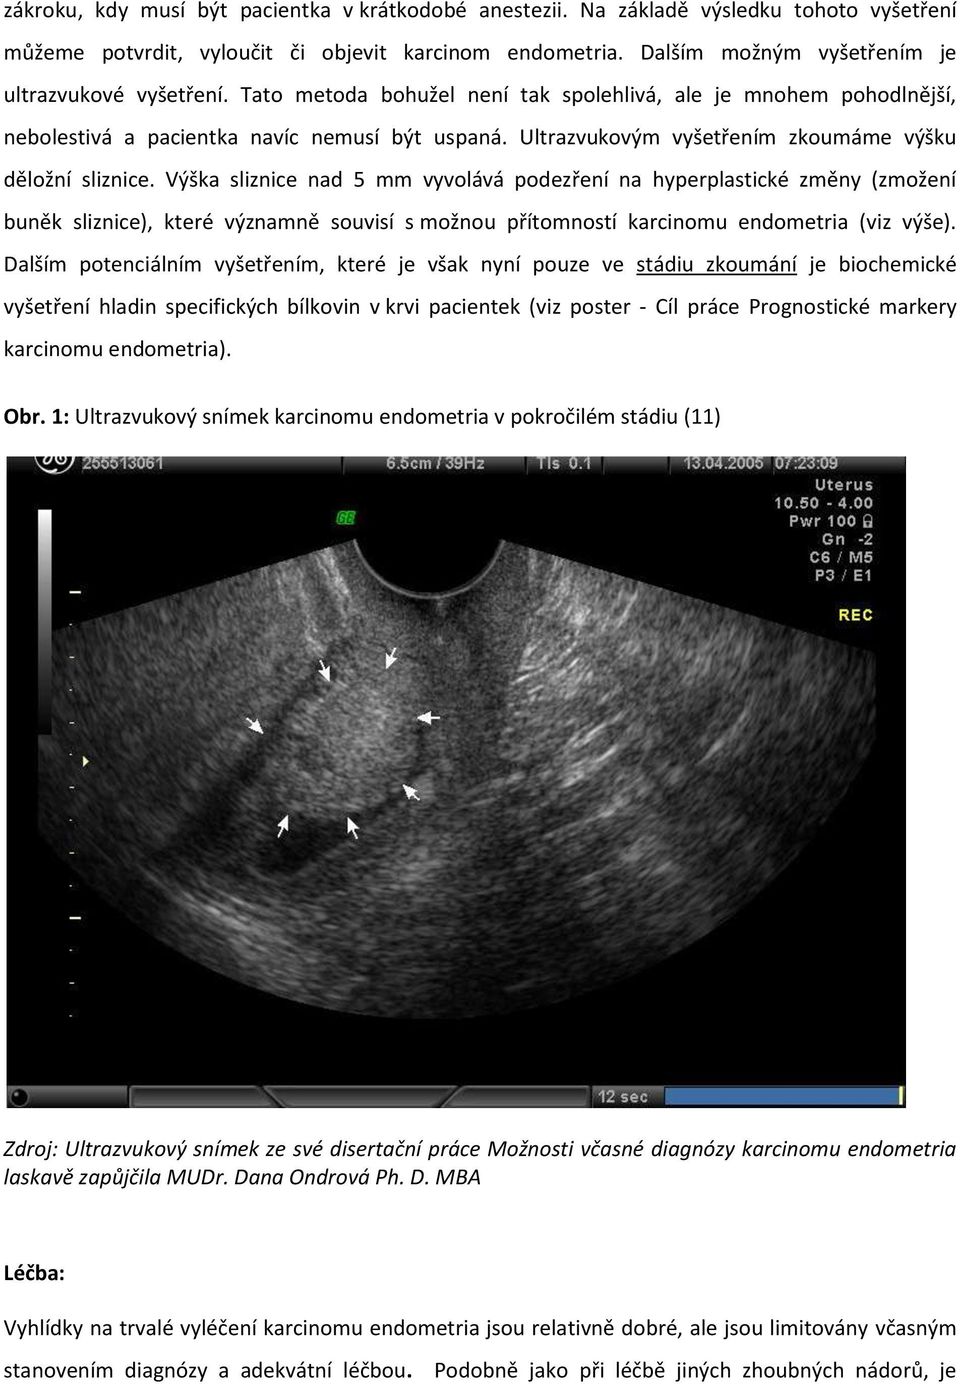 Ultrazvukovým vyšetřením zkoumáme výšku děložní sliznice.